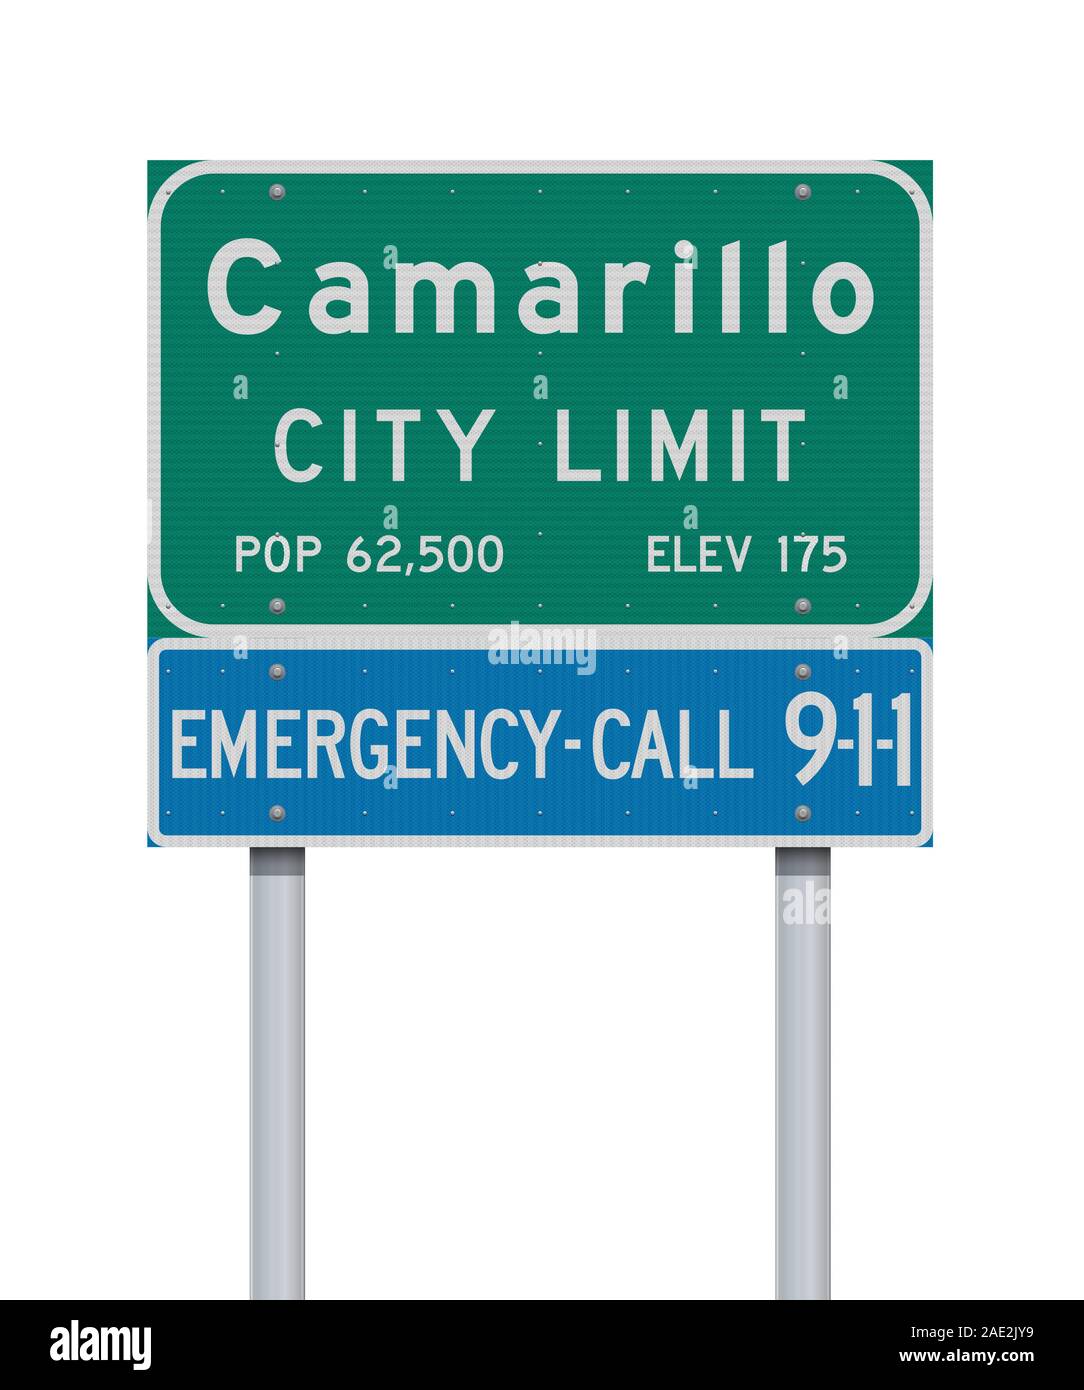 Illustrazione Vettoriale della Camarillo Città verde limite cartello stradale e chiamata di emergenza 9-1-1 cartello blu Illustrazione Vettoriale